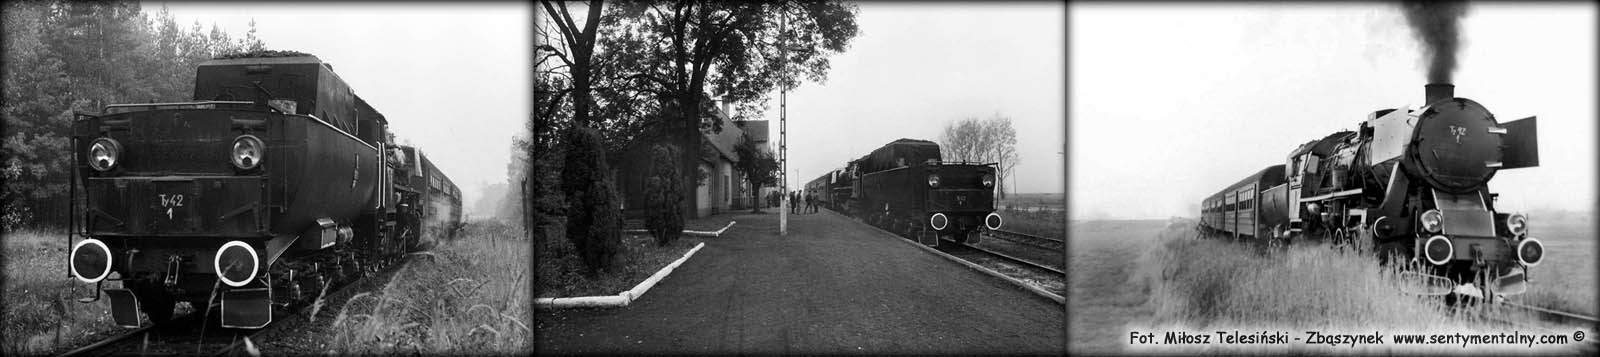 Po lewej na szlaku do Dobrodzienia, w środku stacja Dobrodzień, po prawej droga powrotna z Dobrodzienia w dniu 17.10.1987.